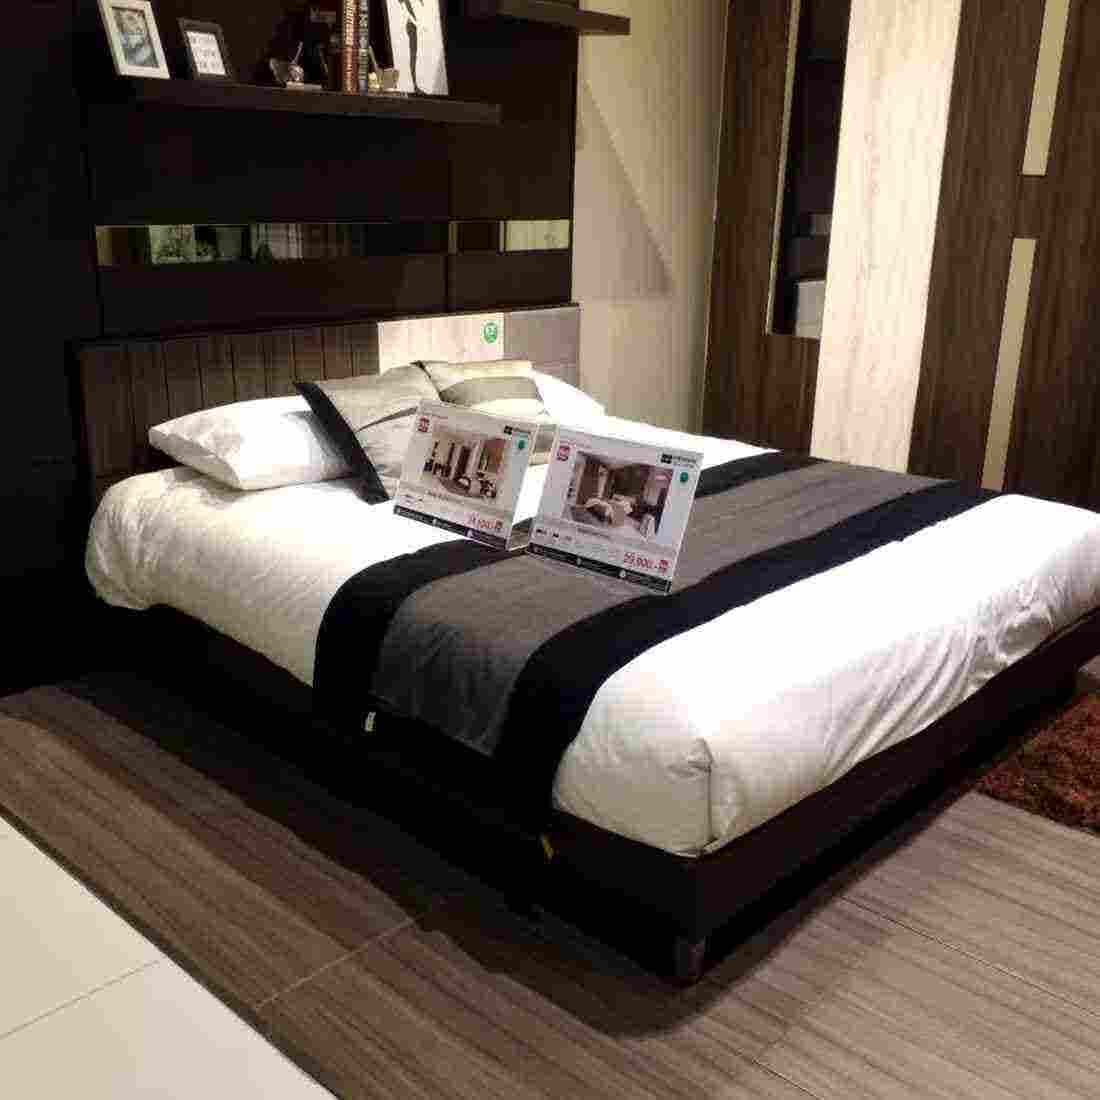 ชุดห้องนอน เตียง รุ่น Econi-B สีสีเข้มลายไม้ธรรมชาติ-SB Design Square